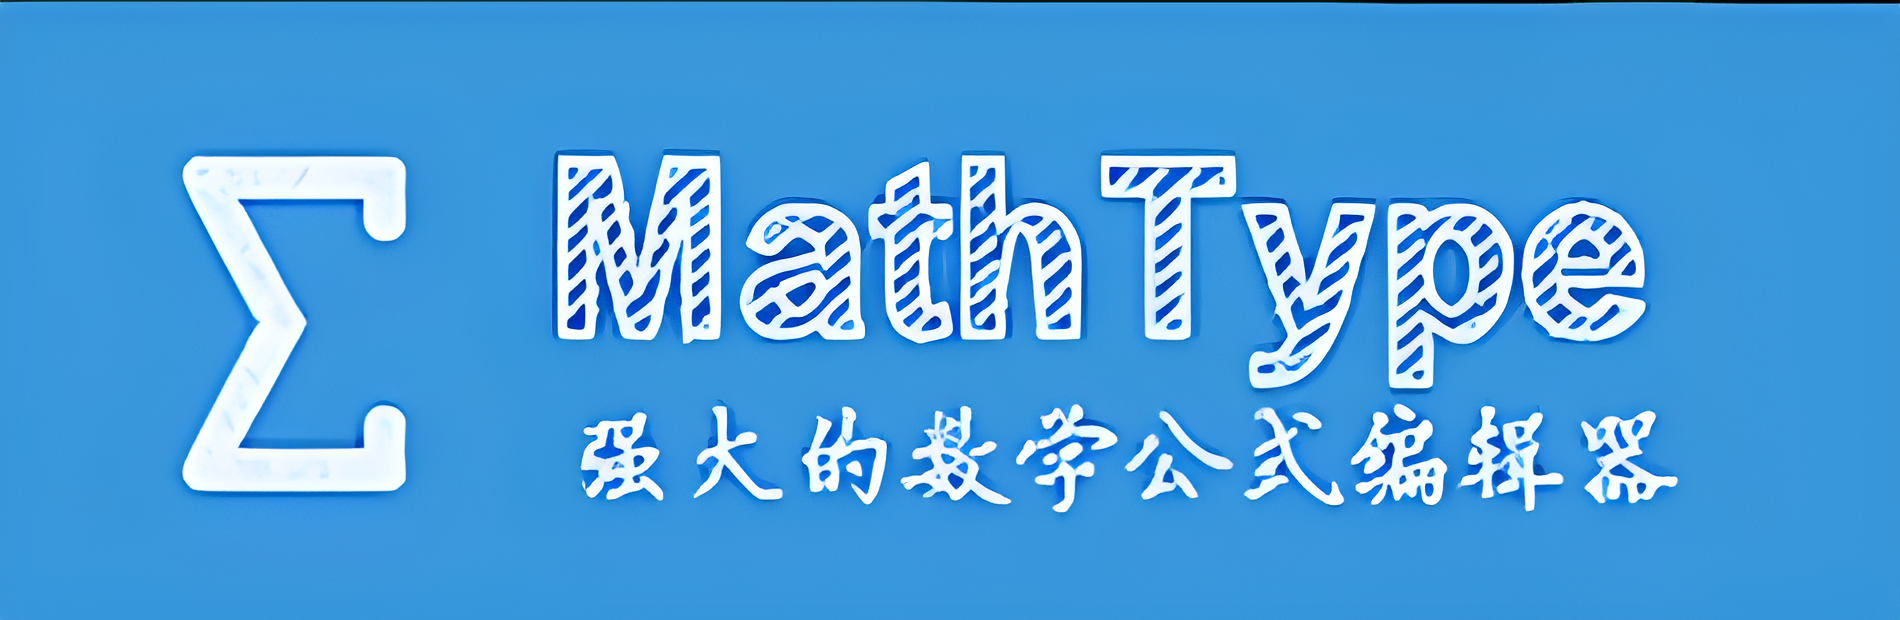 MathType软件下载-MathType数学公式编辑器永久破解版/中文版/绿色破解版-MathType版本大全